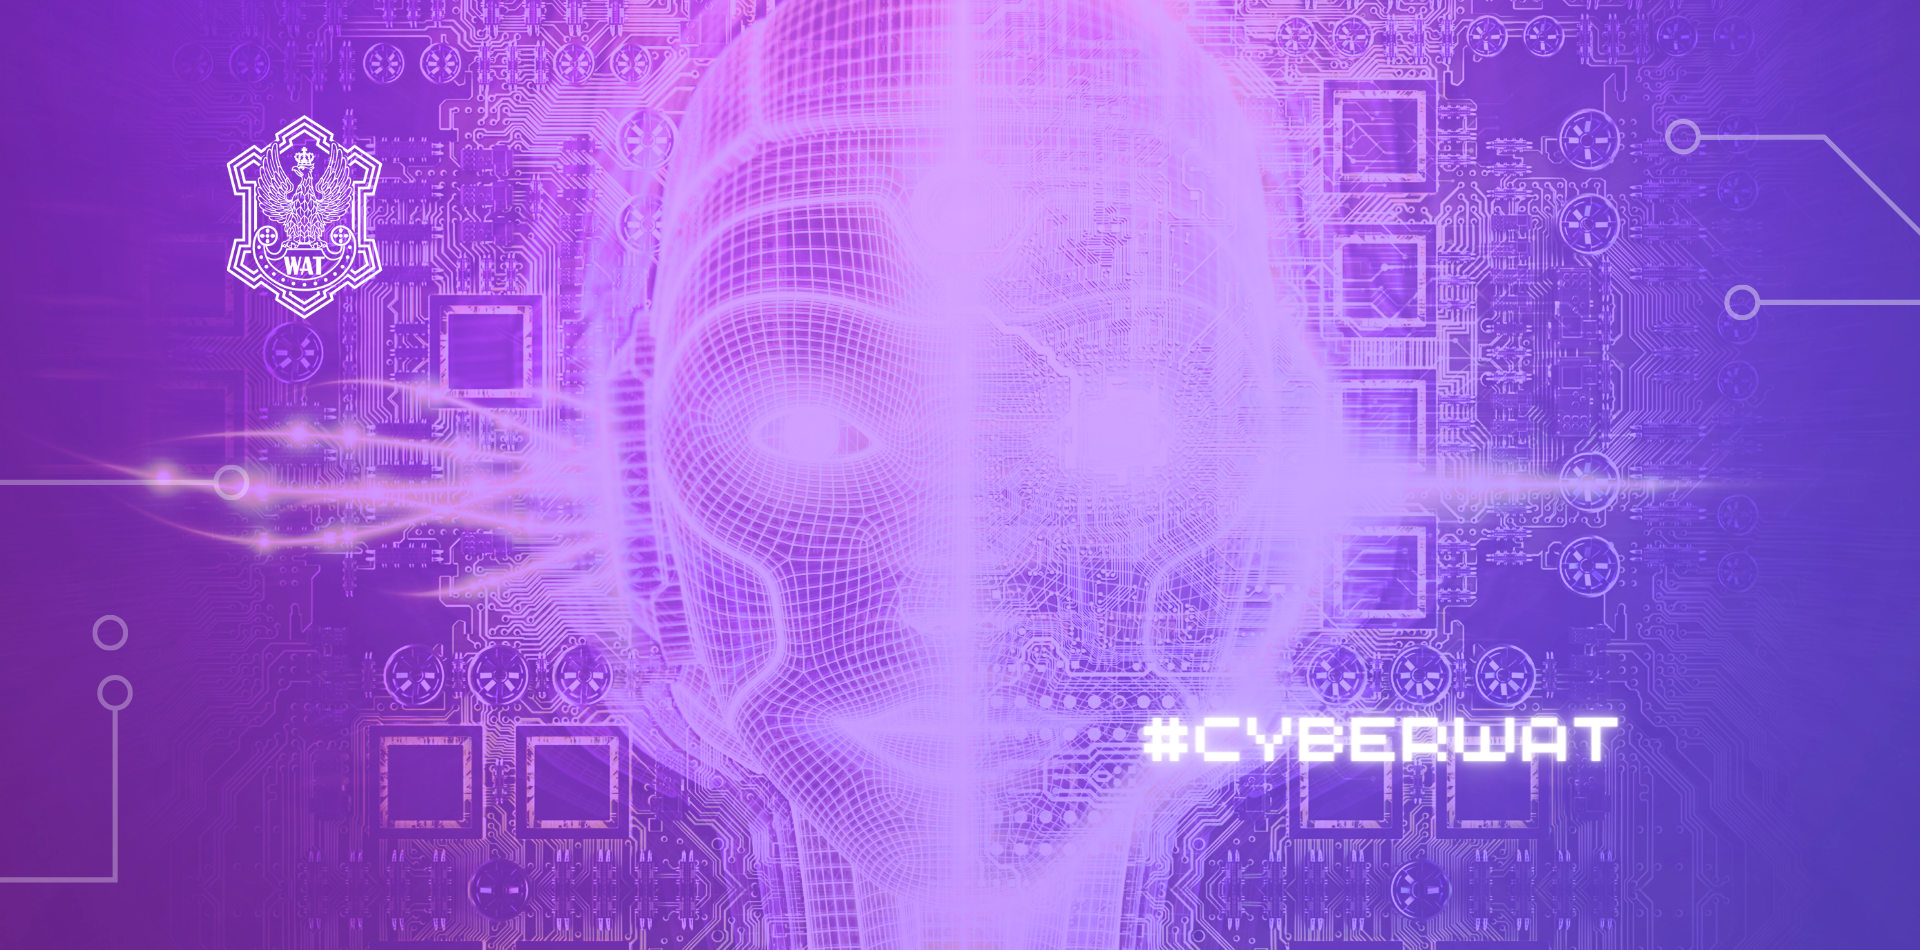 Czy sztuczna inteligencja zapewni nam bezpieczeństwo w cyberprzestrzeni, czy stanie się źródłem nowych zagrożeń? W ramach cyklu #cyberWAT przedstawiamy dobre i złe strony tej rewolucyjnej technologii, ukazując jej wpływ na nasze codzienne życie online.